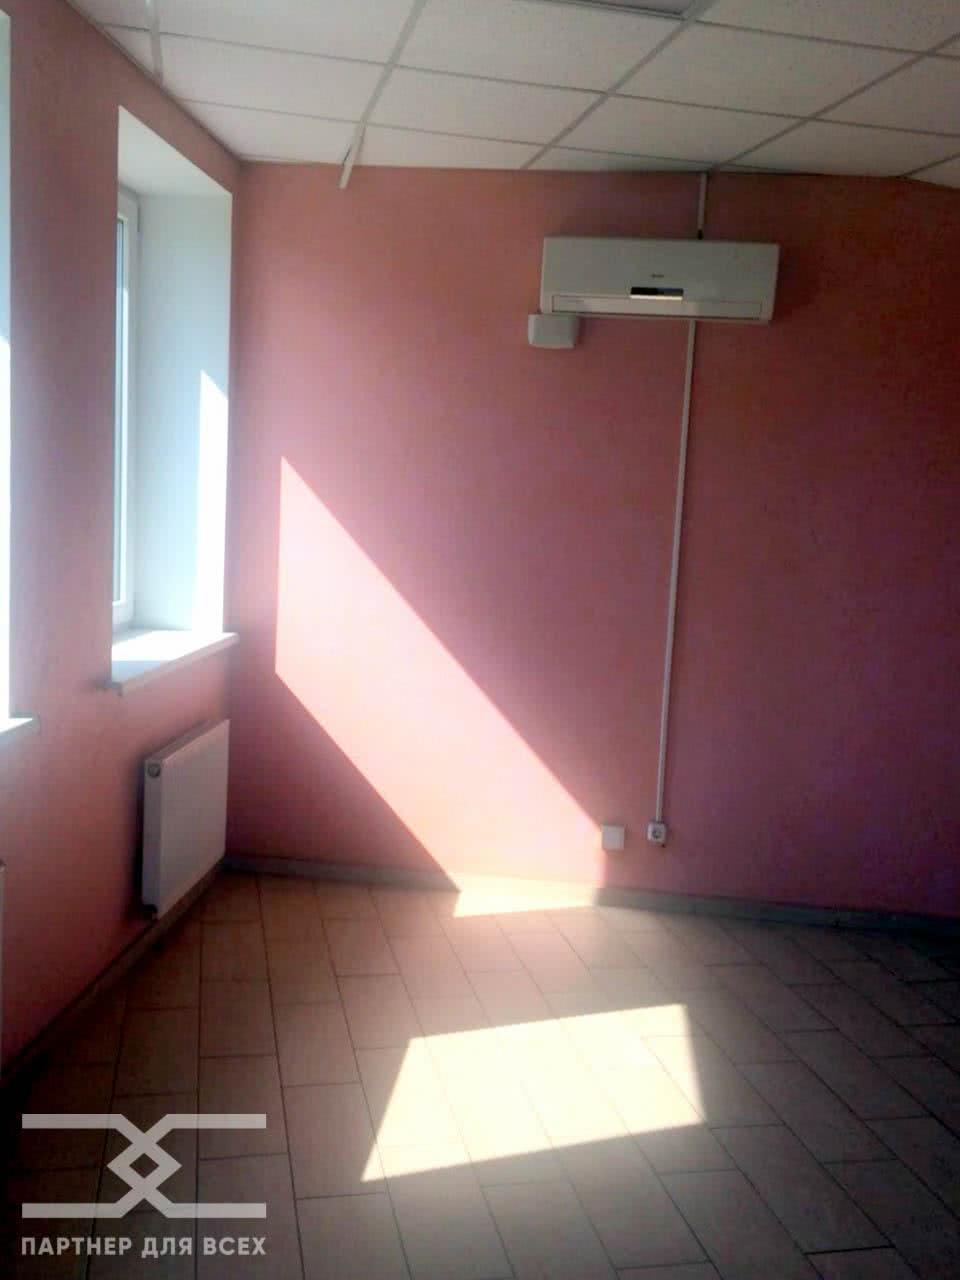 Снять офис на ул. Уборевича, д. 111 в Минске, 495BYN - фото 1